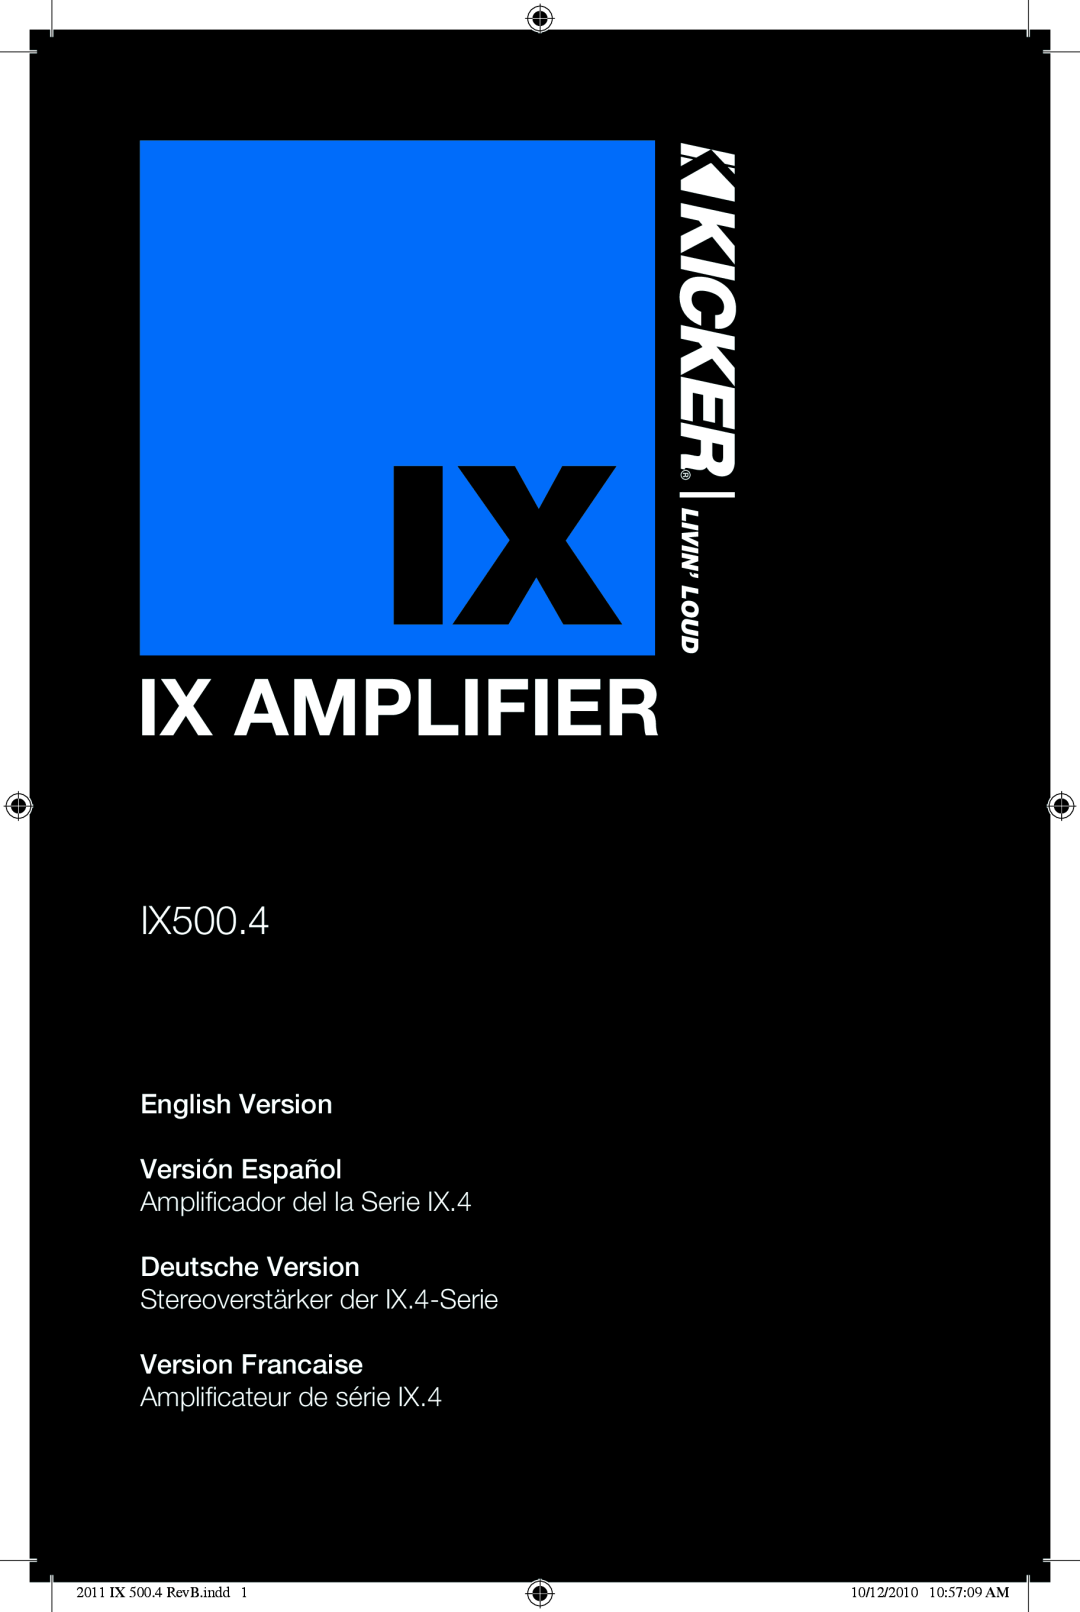 Kicker IX500.4 manual Ix Amplifier, English Version Versión Español, Amplificador del la Serie Deutsche Version 